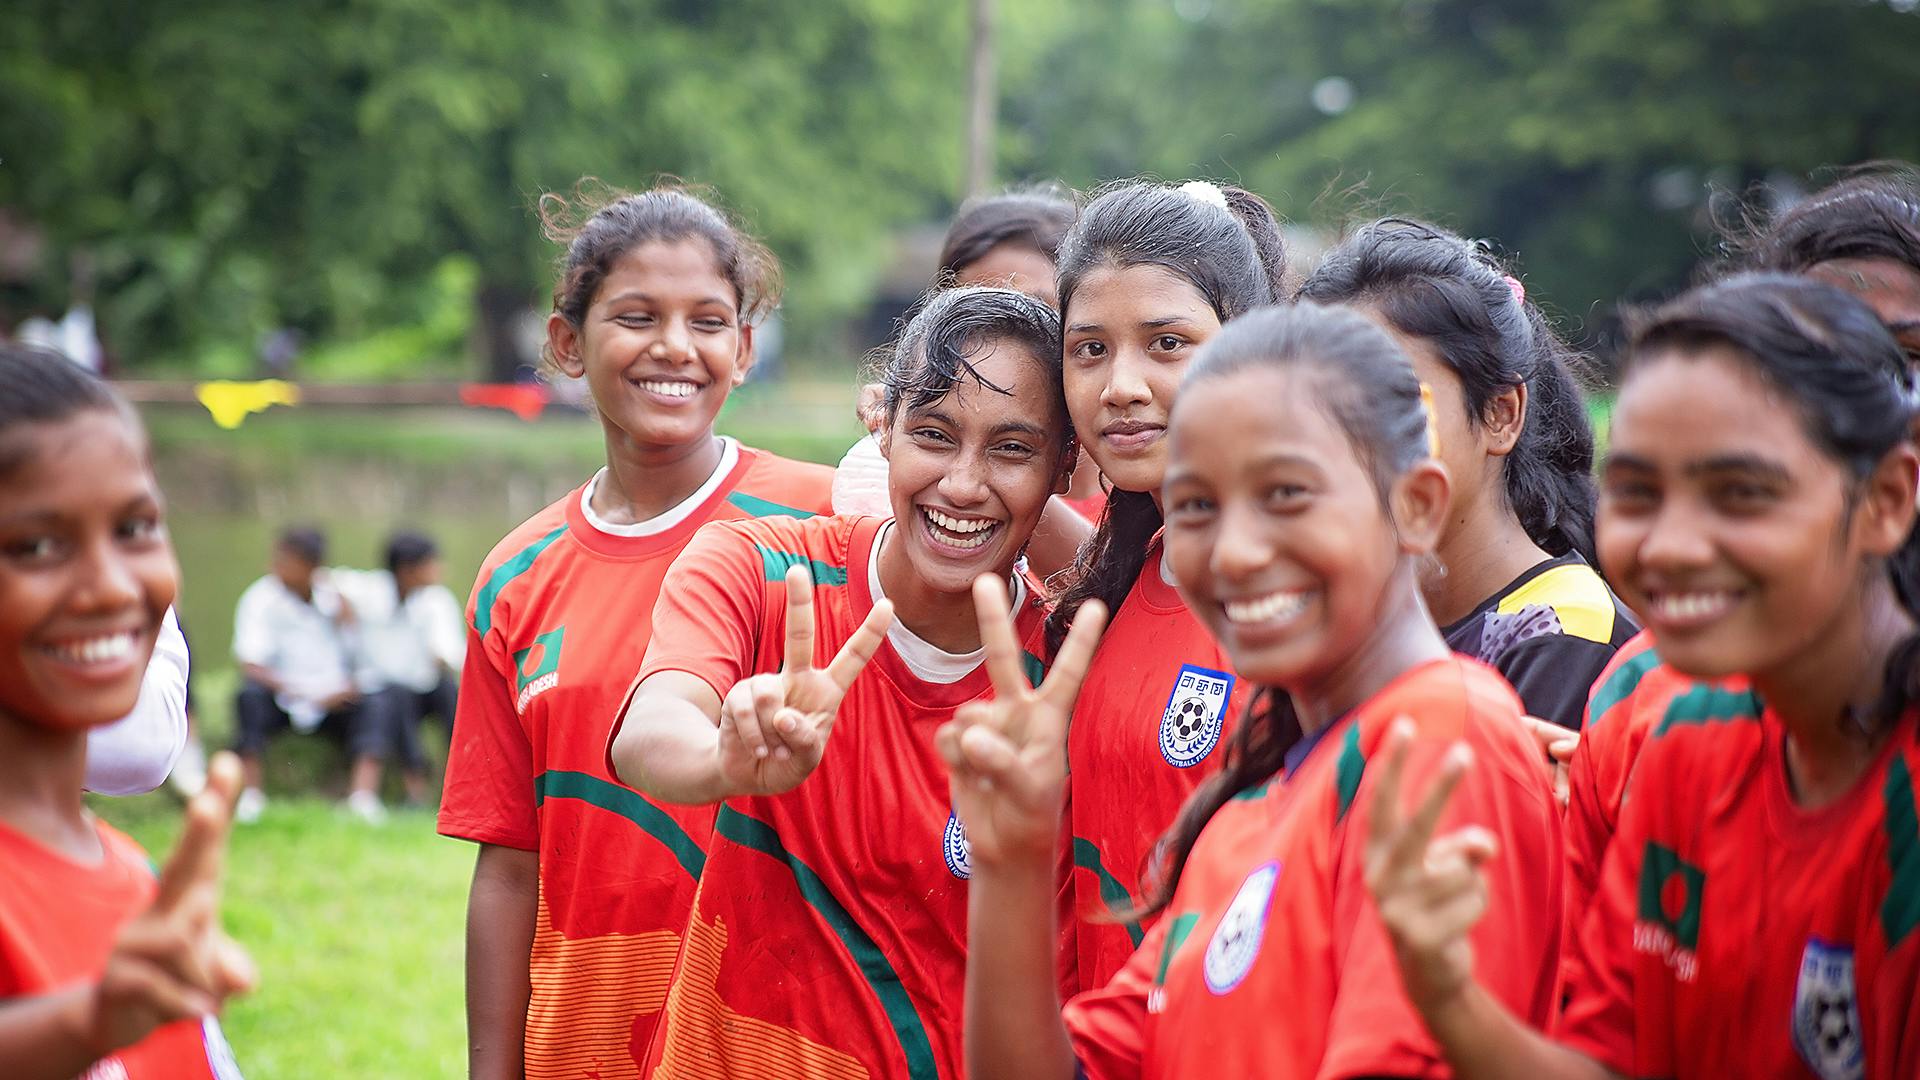 En grupp flickor i röda fotbollströjor står i grupp och ler och ser in i kameran.